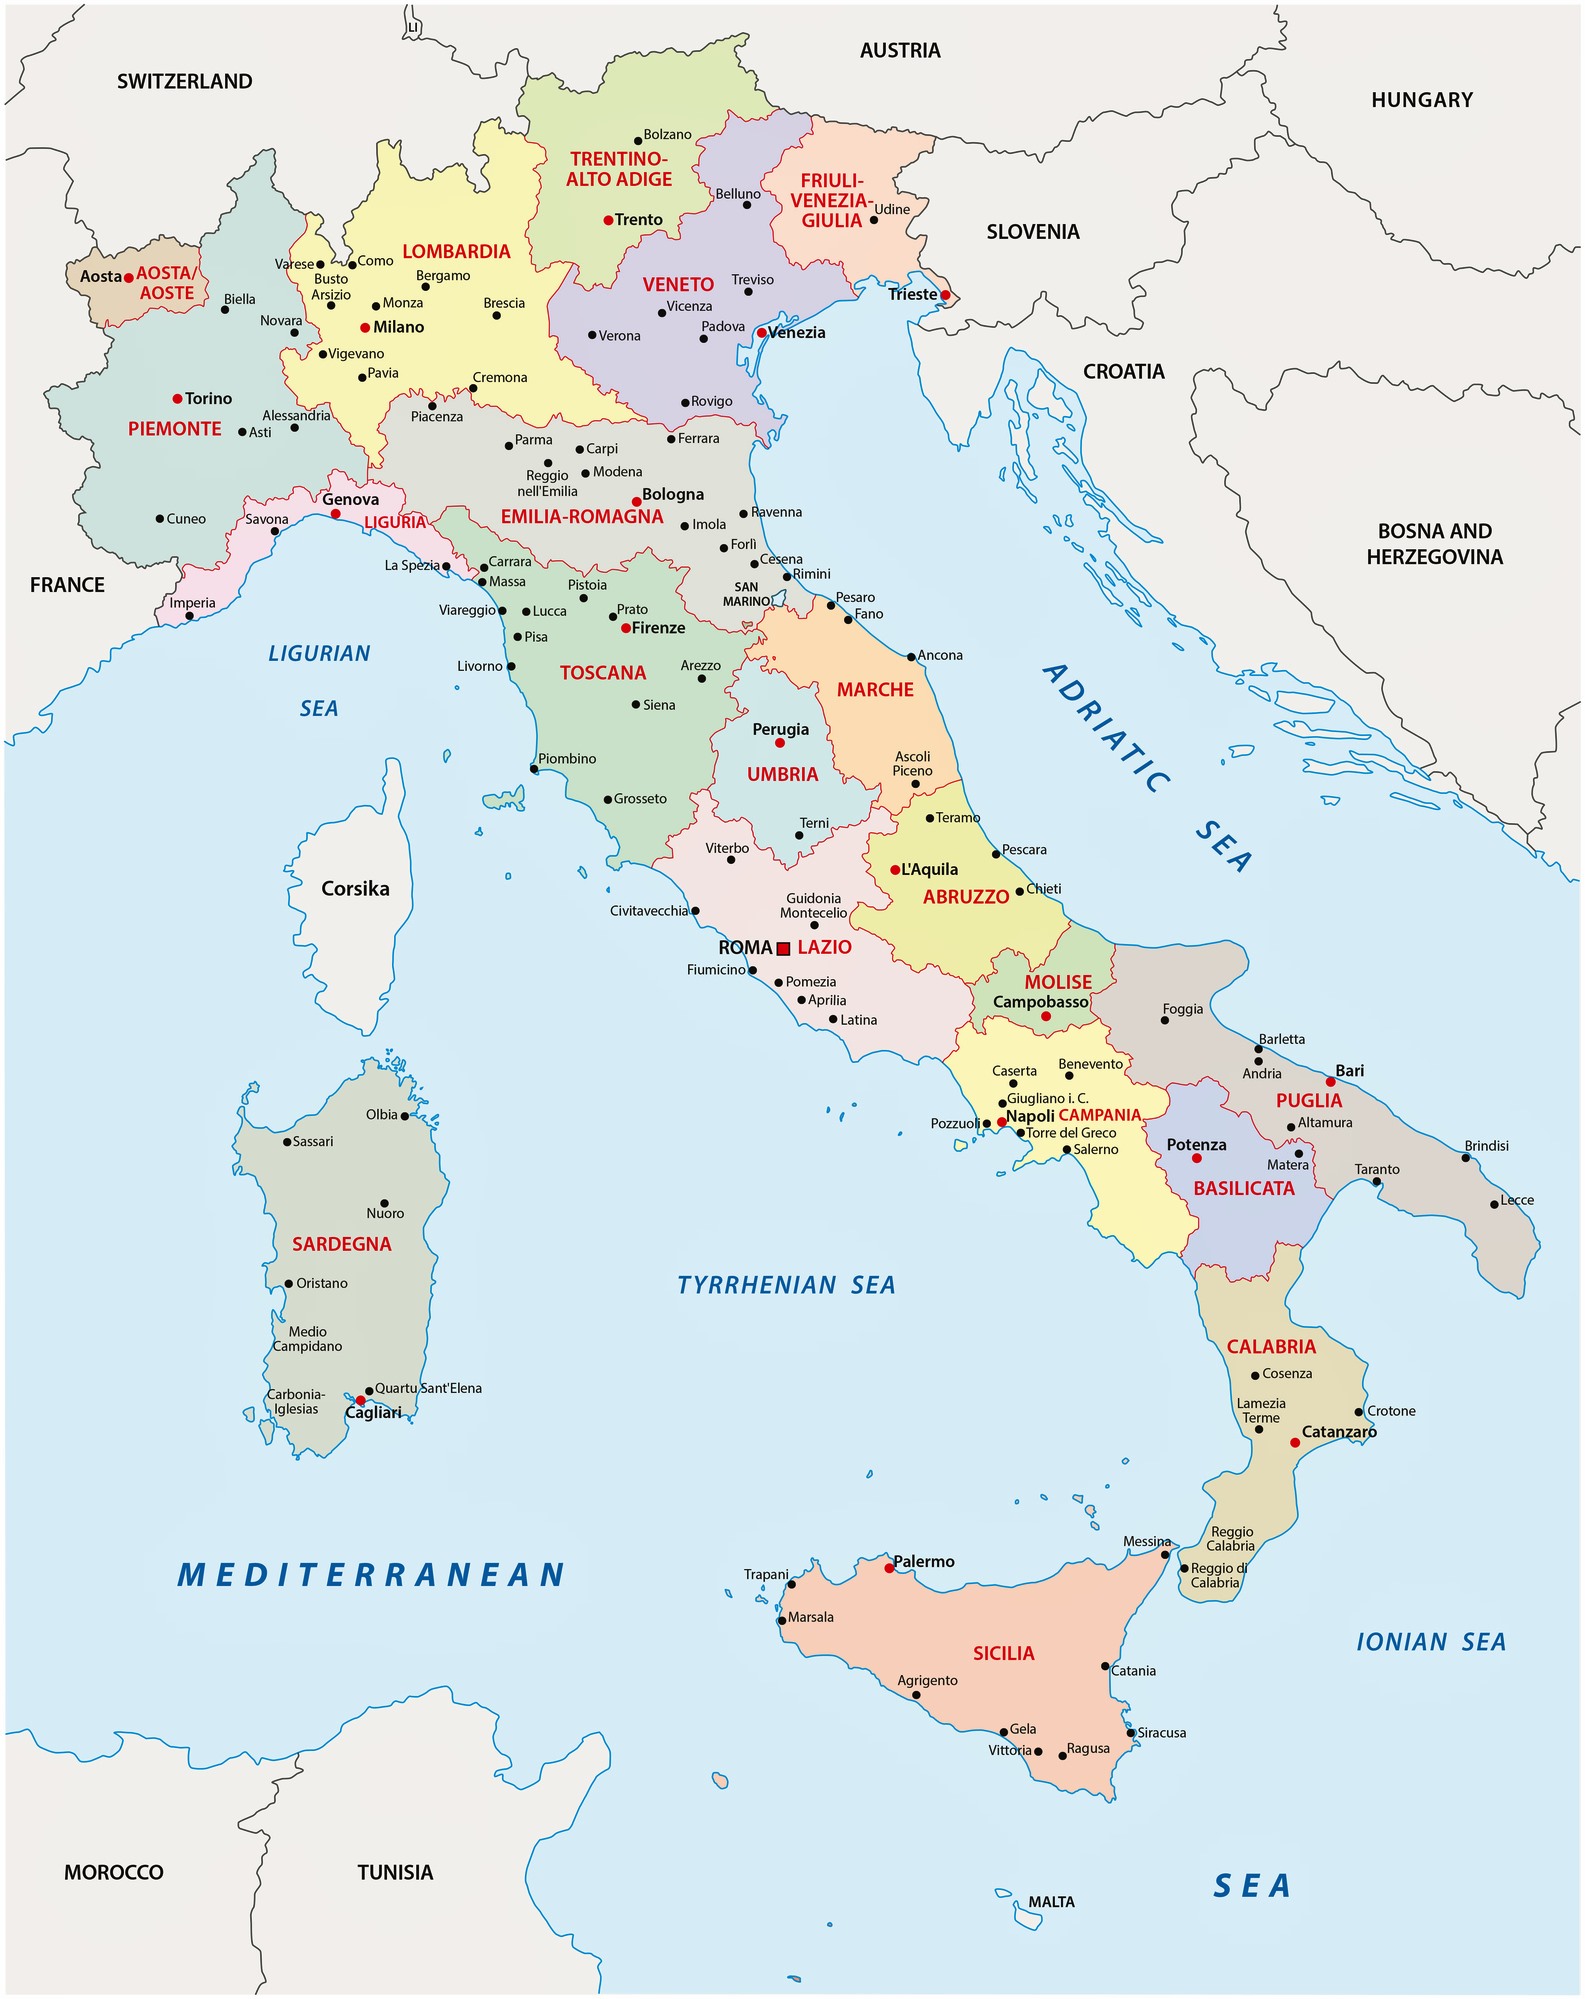 Karten von Italien | Karten von Italien zum Herunterladen und Drucken